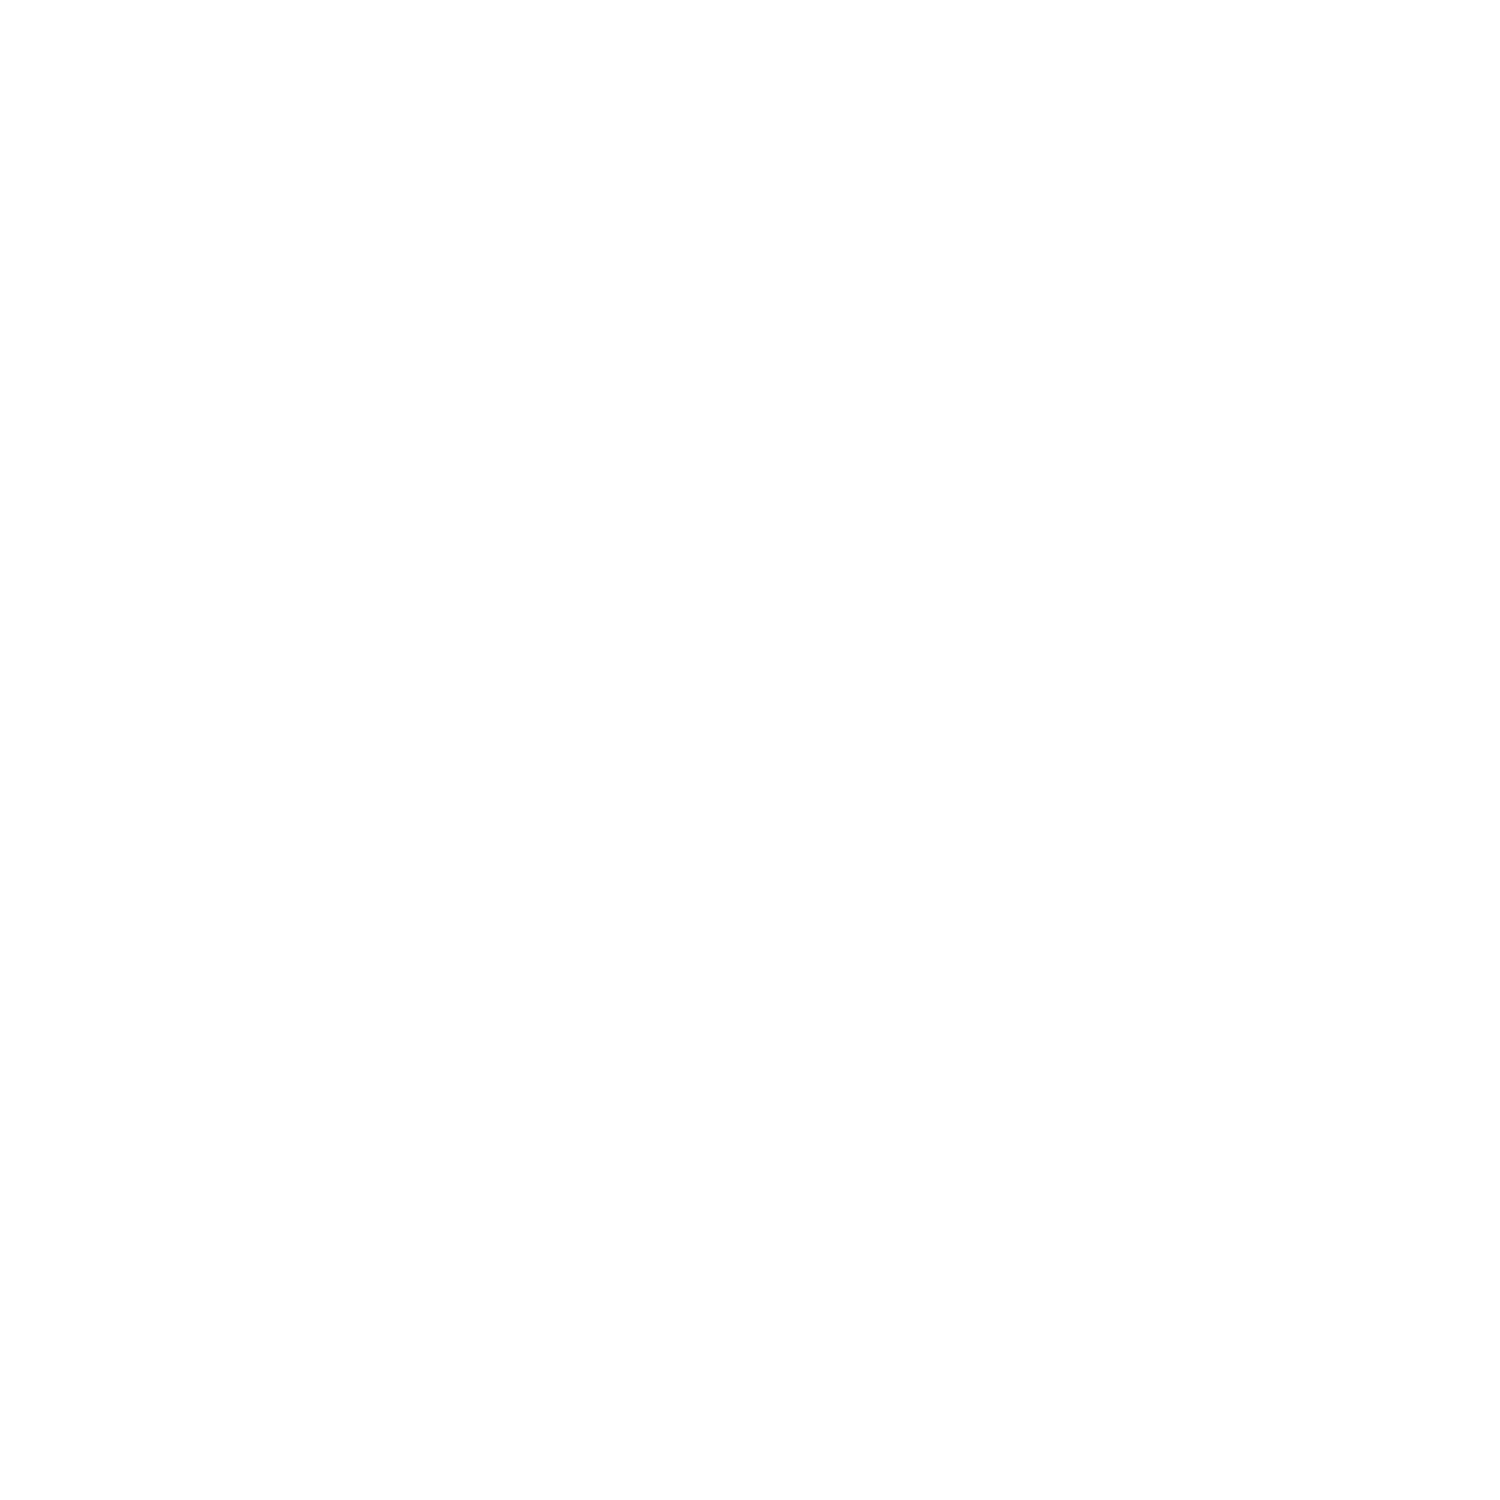 We offset our carbon footprint via Carbon Neutral Britain